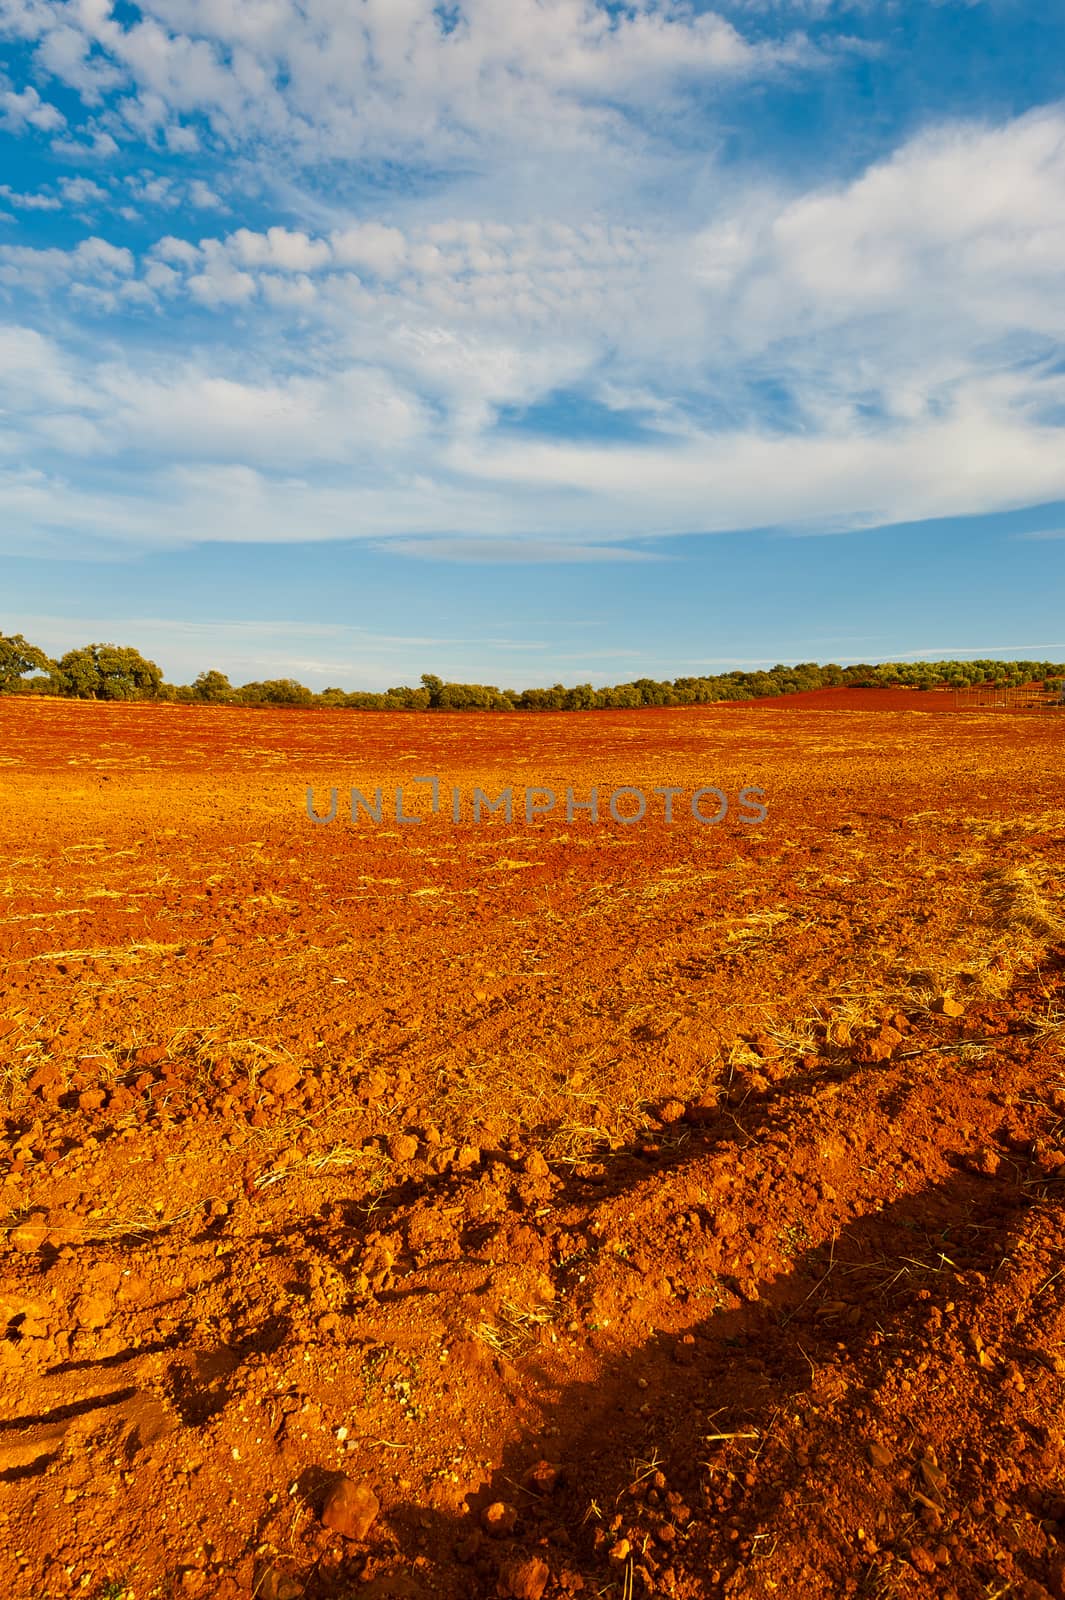 Plowed Fields of Spain in a Autumn